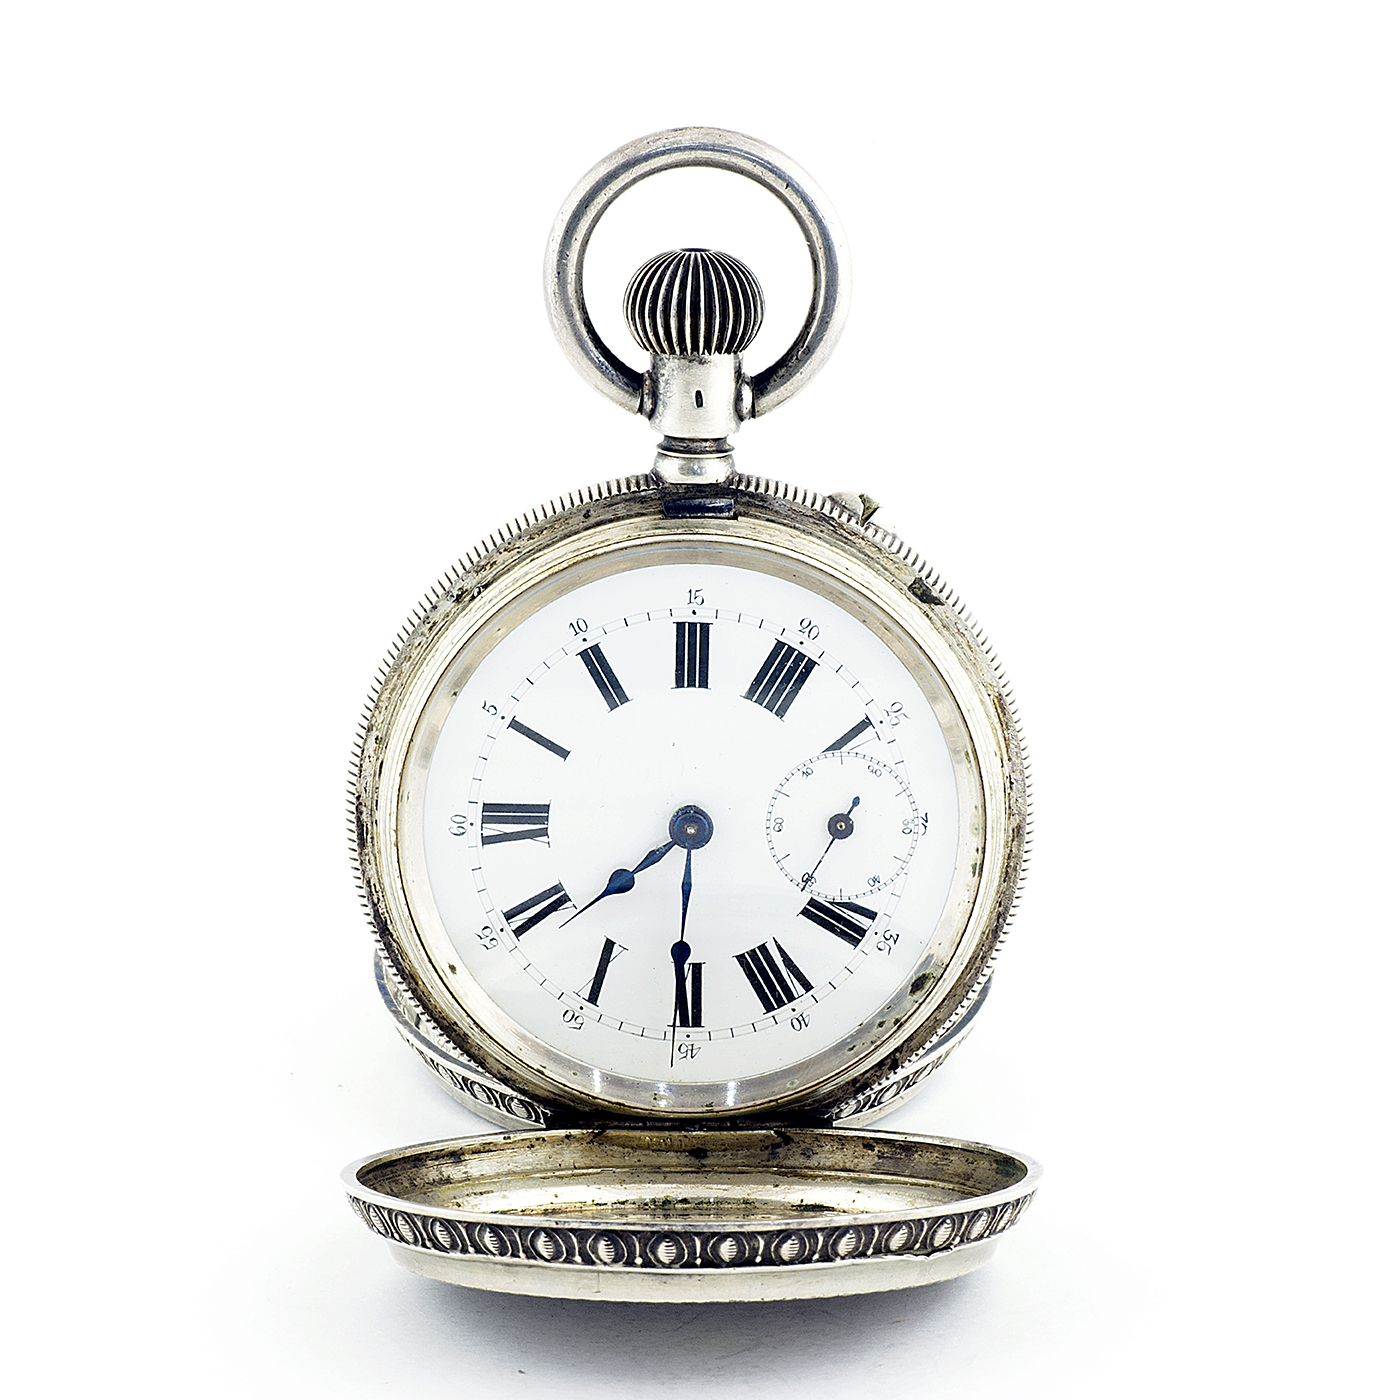 Reloj suizo de Bolsillo, saboneta y remontoir. Suiza, ca. 1870.